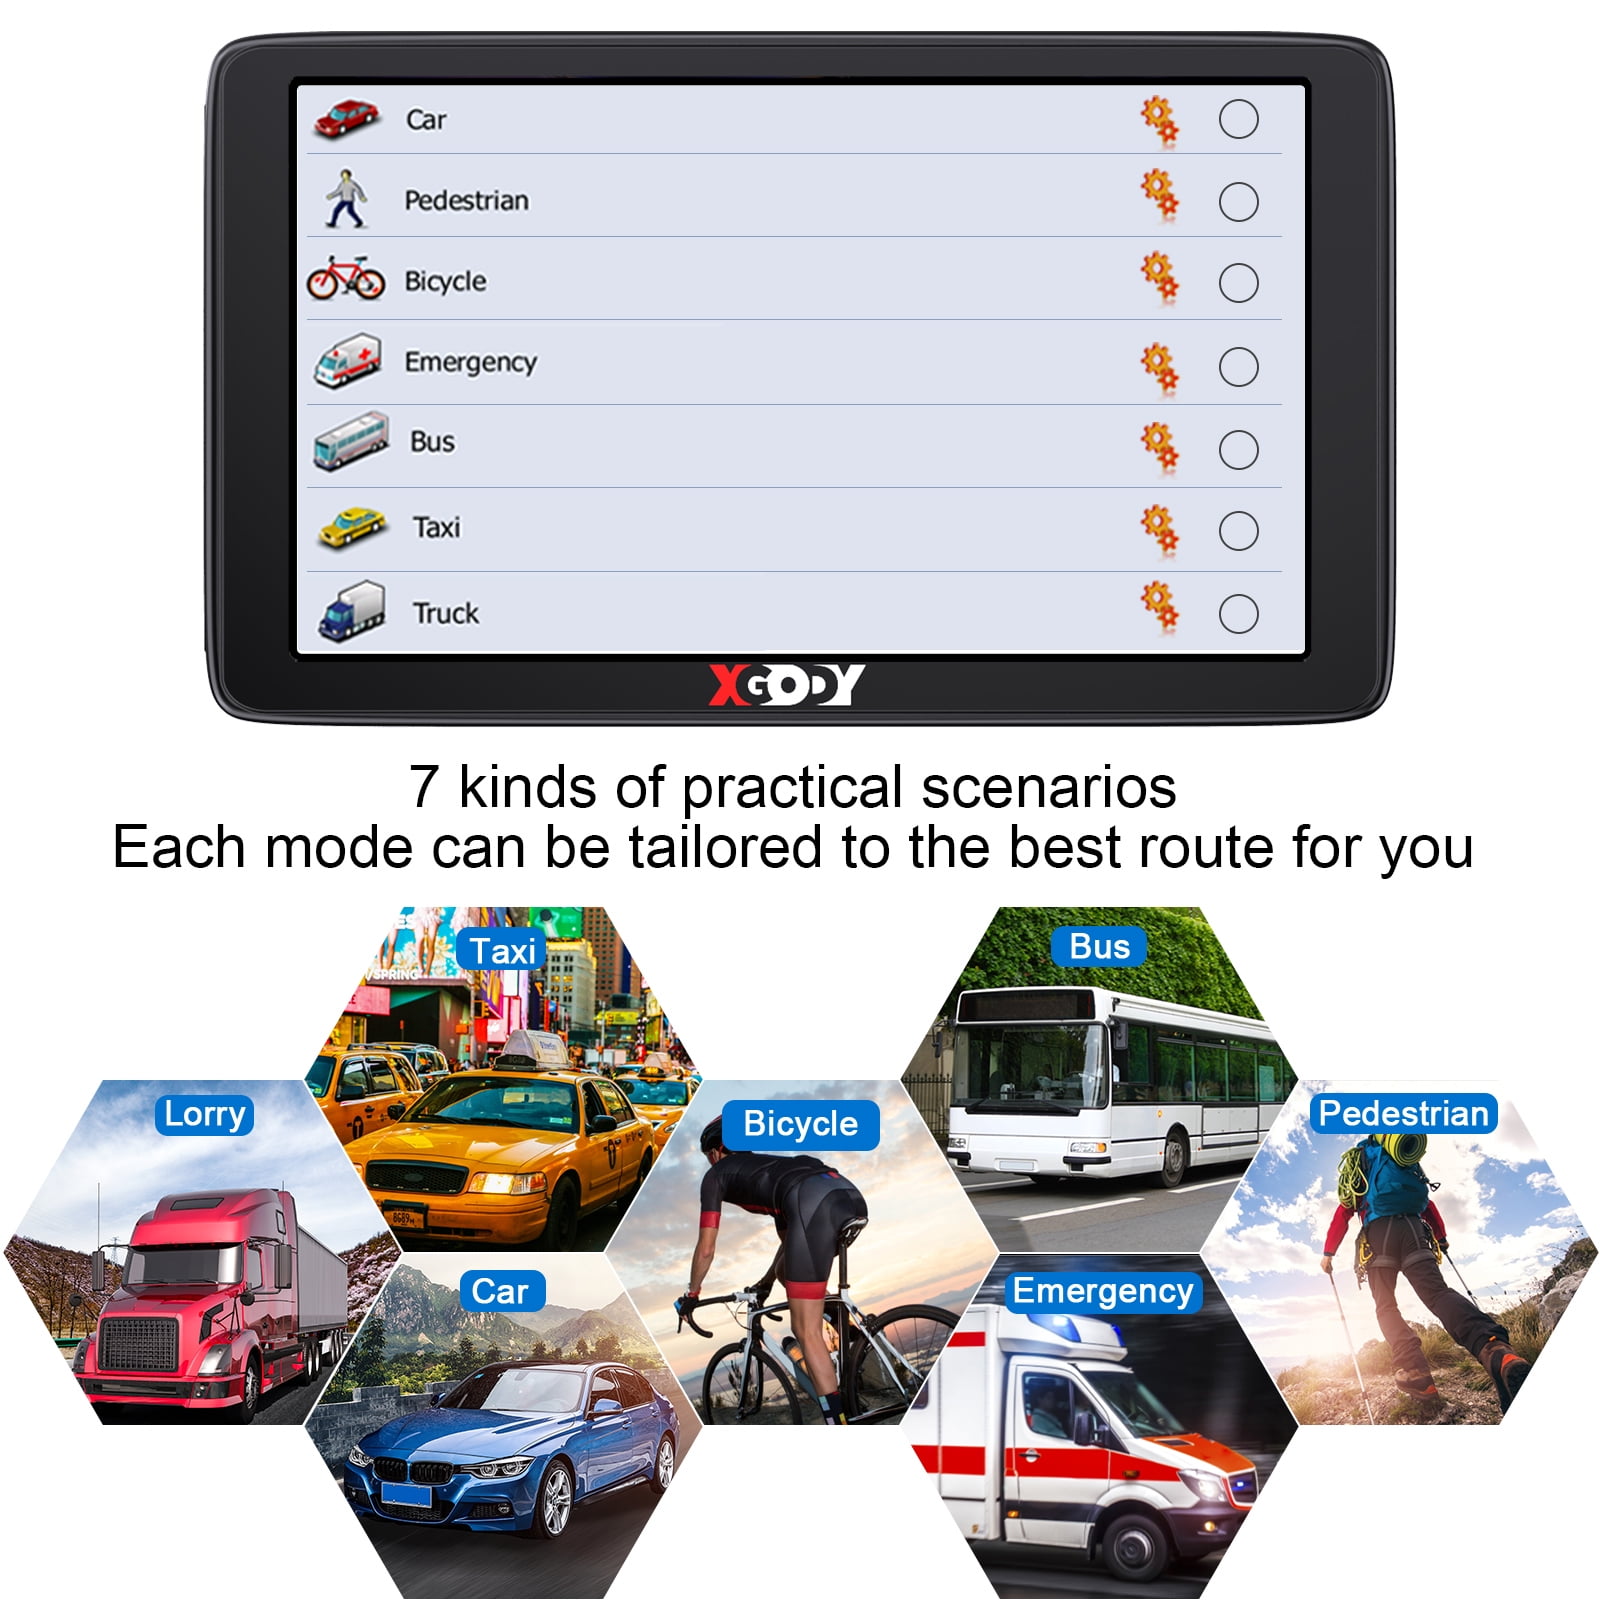 XGODY-navegador GPS para coche y camión, pantalla táctil capacitiva de 7  pulgadas, 886, 256M + 8GB, indicaciones de voz opcionales, mapa gratuito  2022